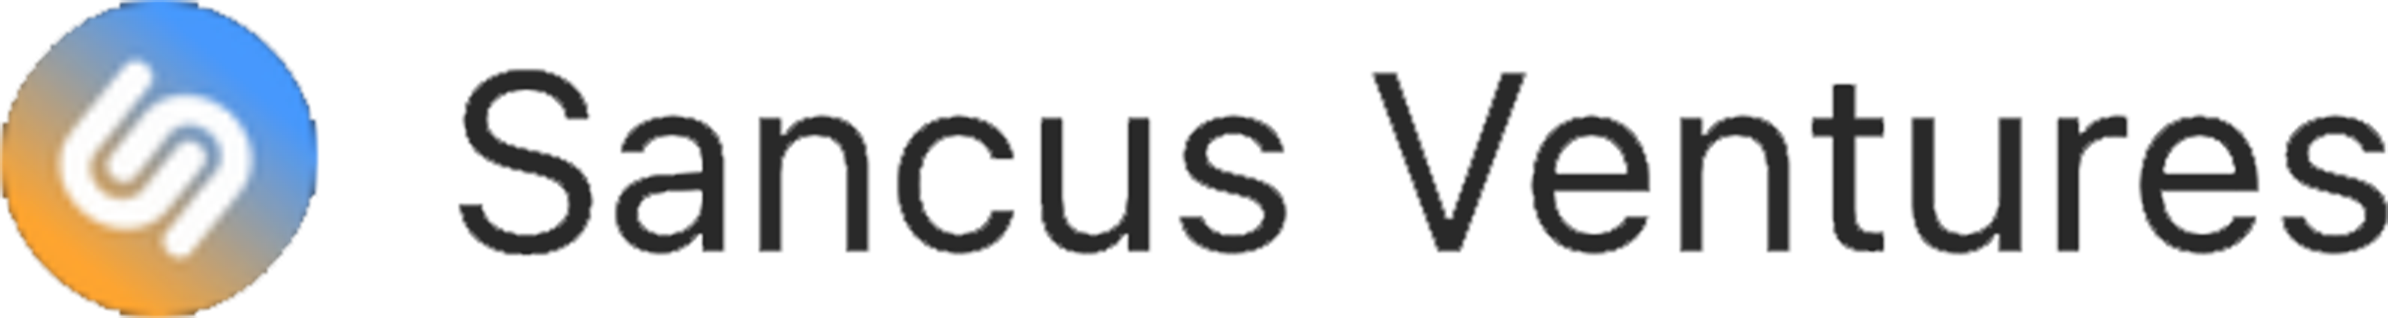 sancus ventures logo3x